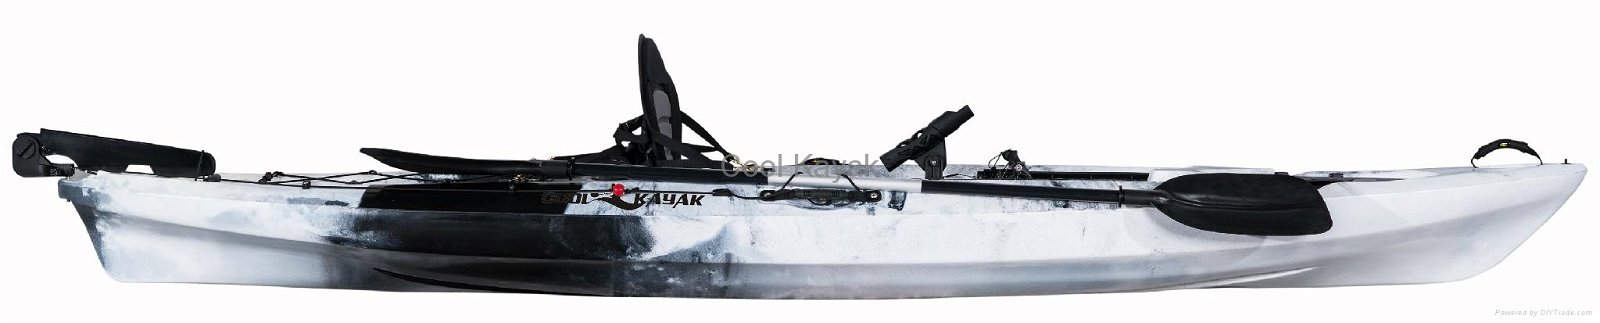 Cheap Popular Single Fishing Kayak 2